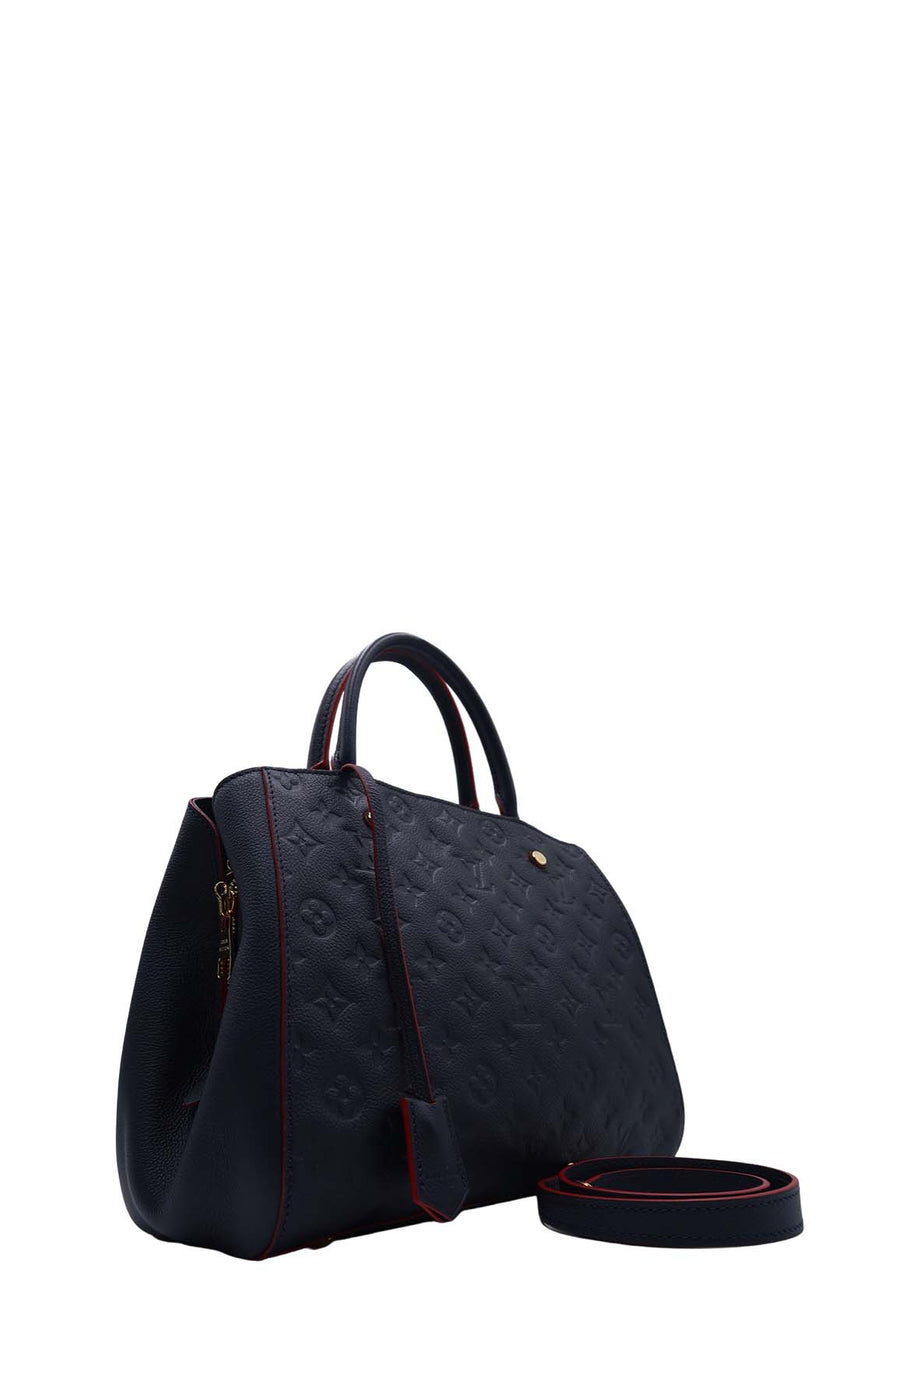 Louis Vuitton Marine Rouge Empreinte Montaigne Handbag